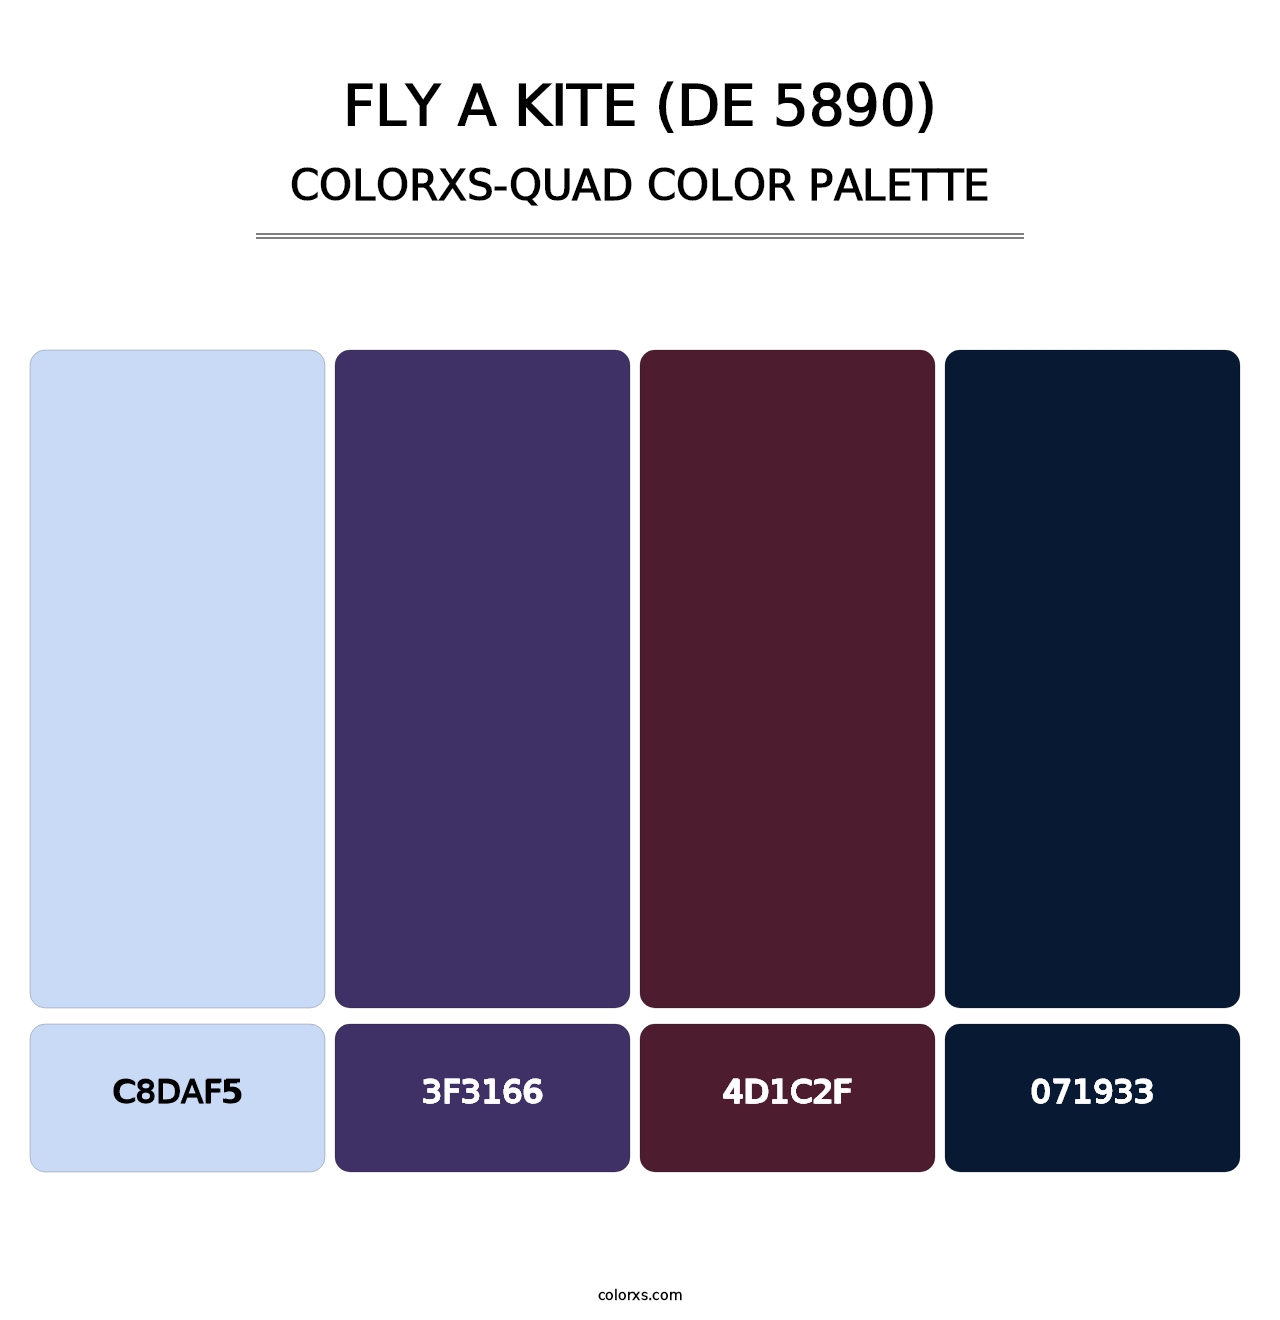 Fly a Kite (DE 5890) - Colorxs Quad Palette